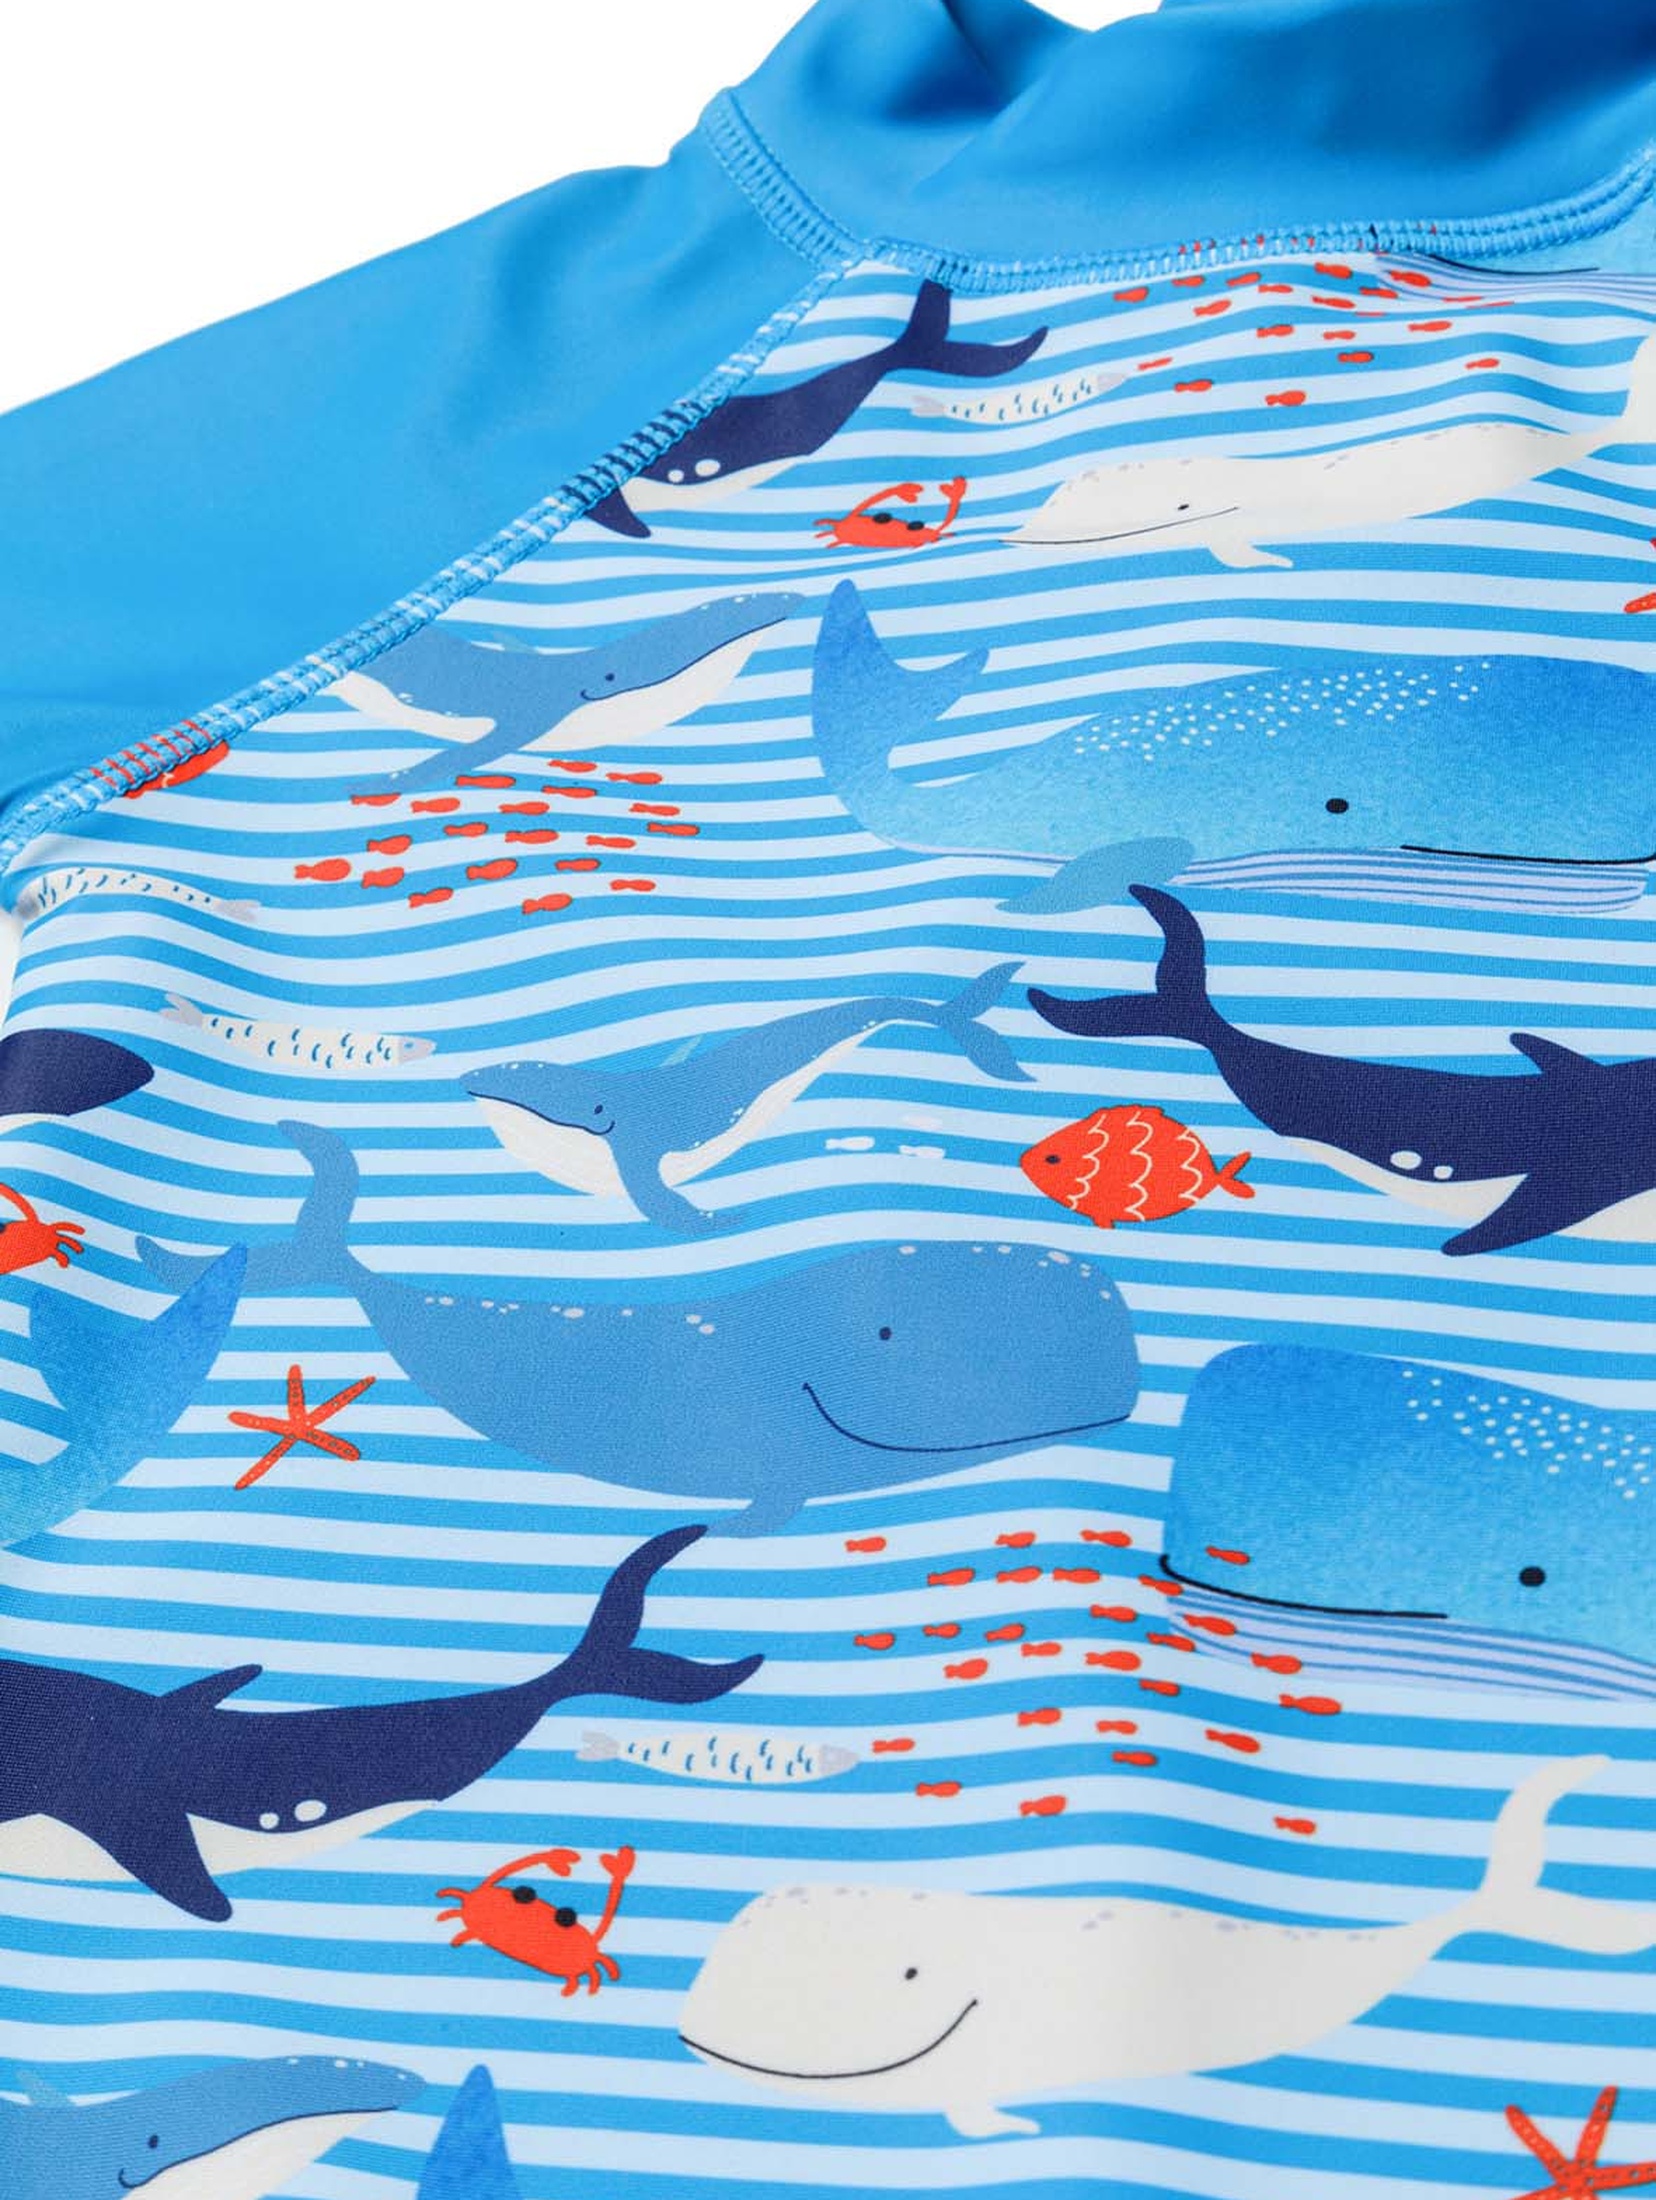 Niebieski kombinezon kąpielowy z filtrem UV i czapką - wieloryby